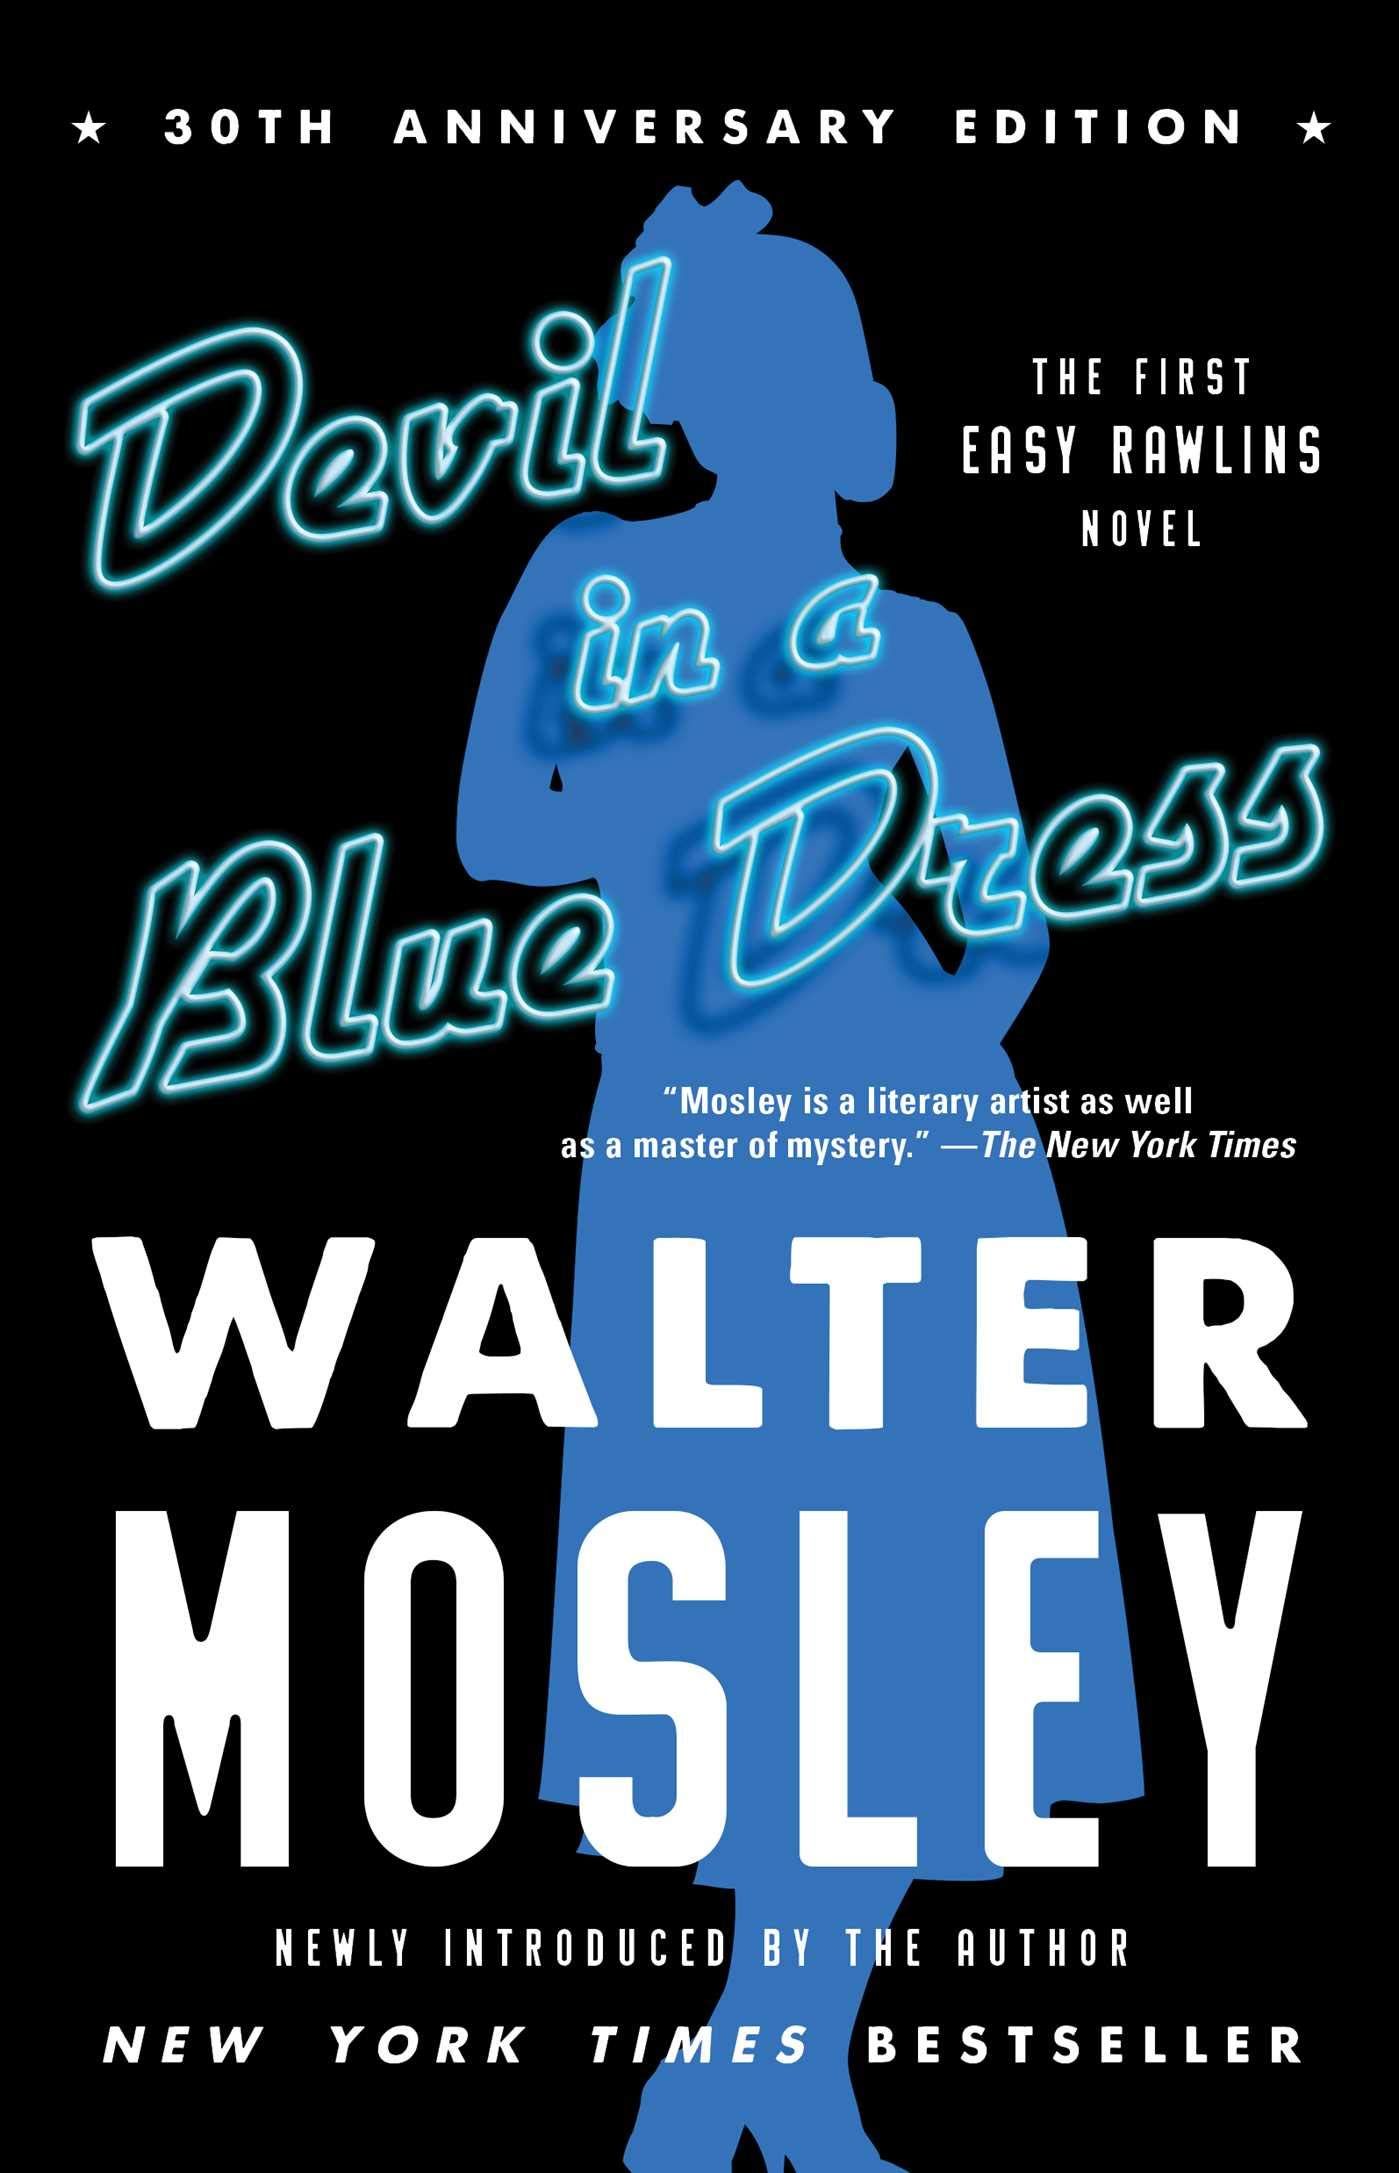 Book cover of a devil in a blue dress